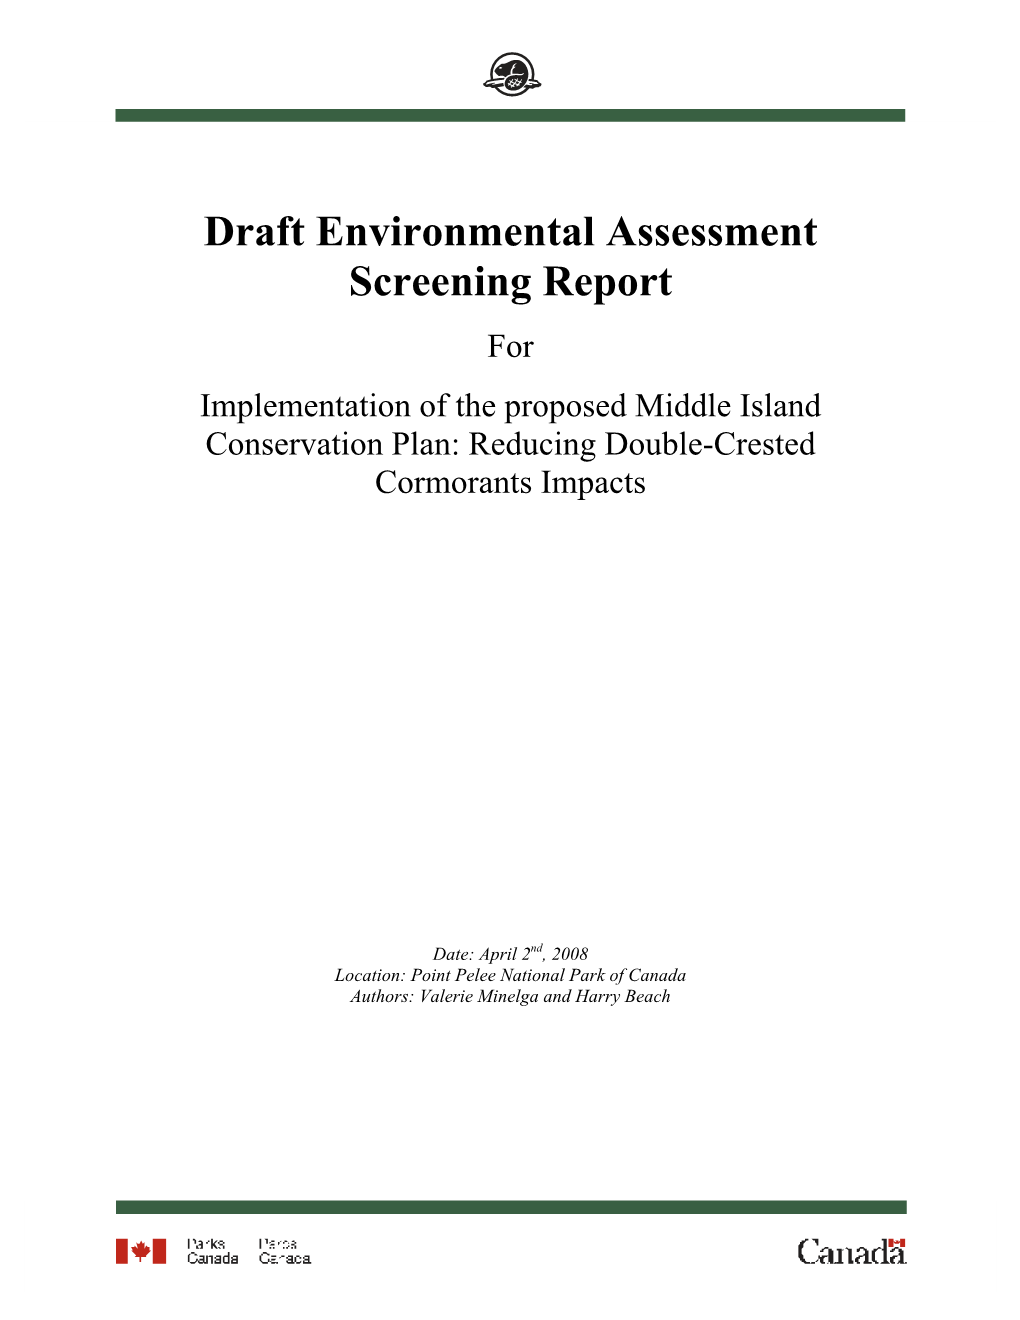 Draft Environmental Assessment Screening Report